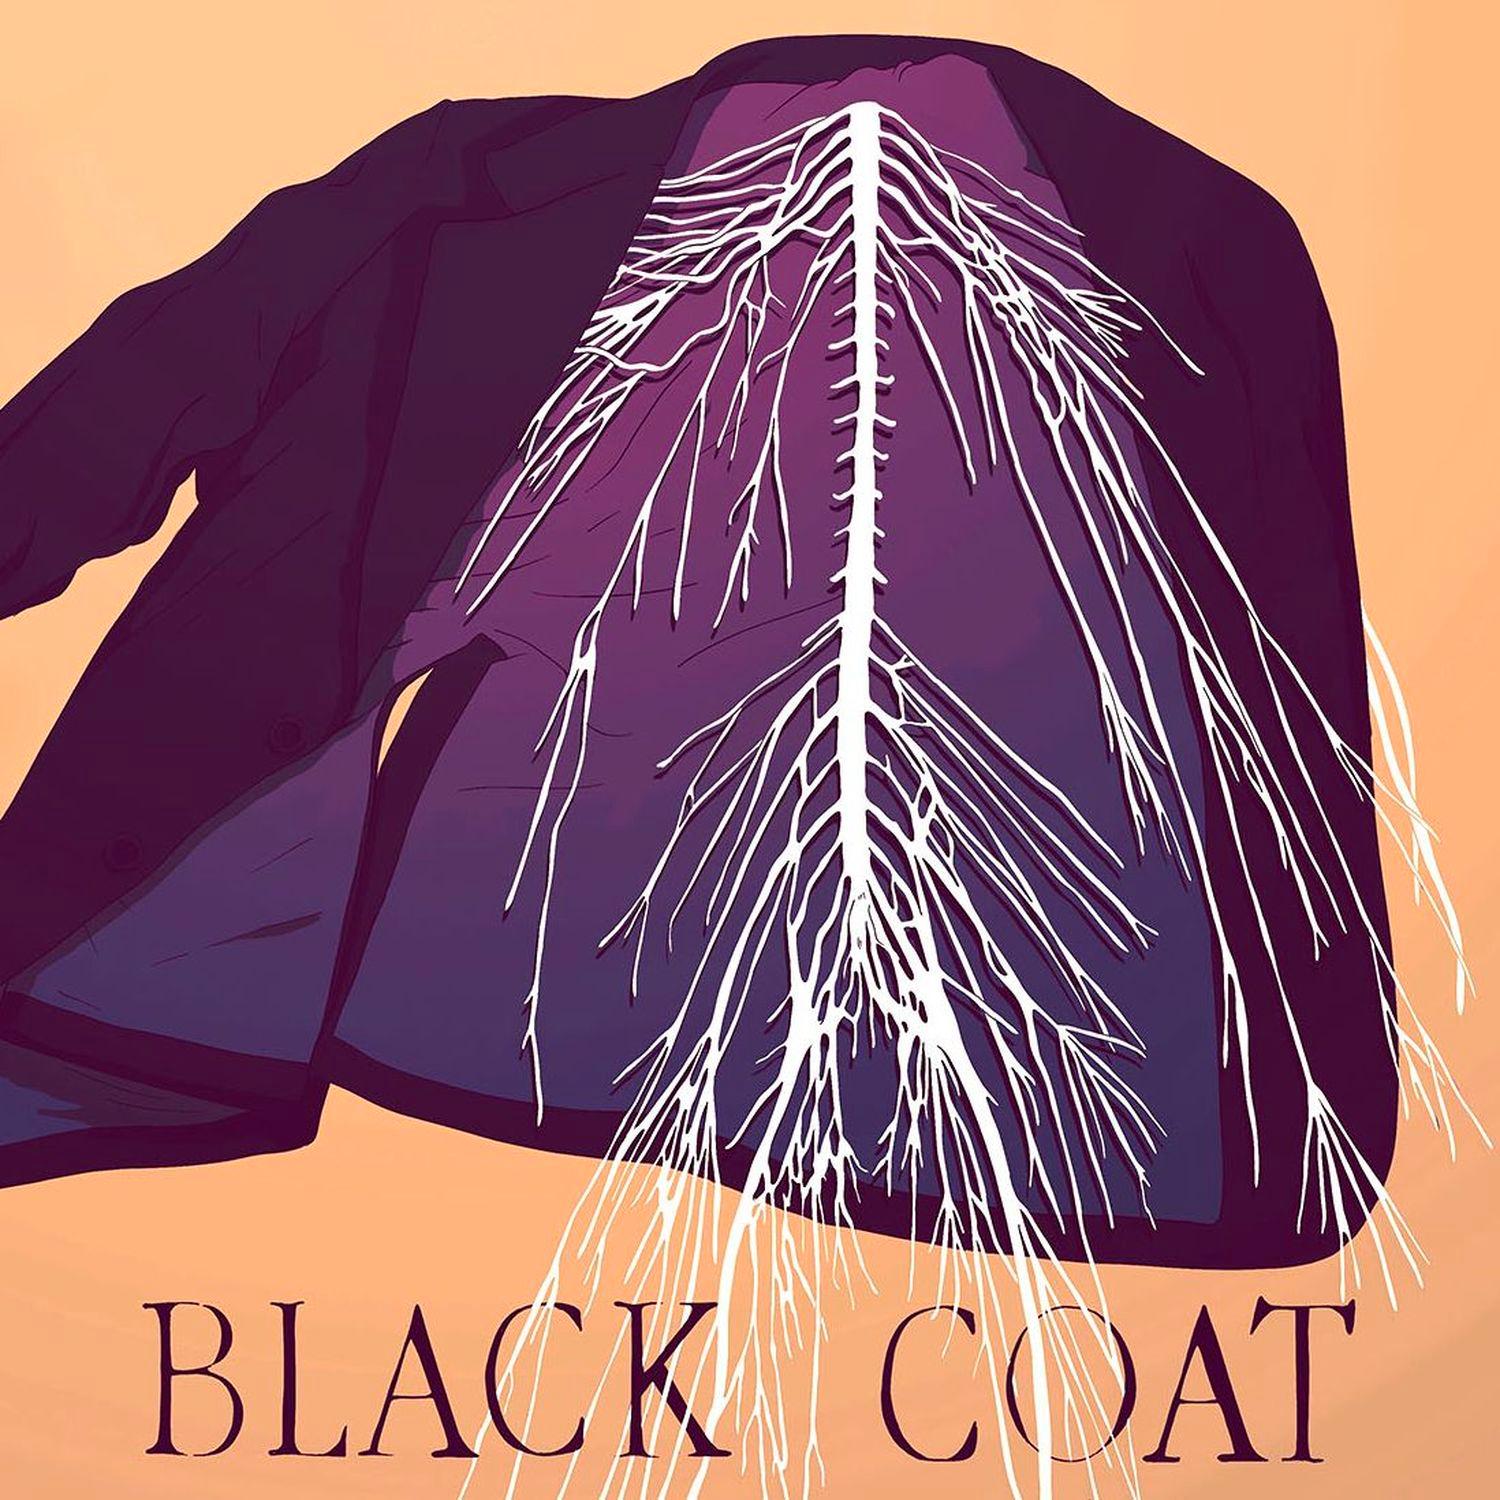 Thumbnail for "209 - The Black Coat".